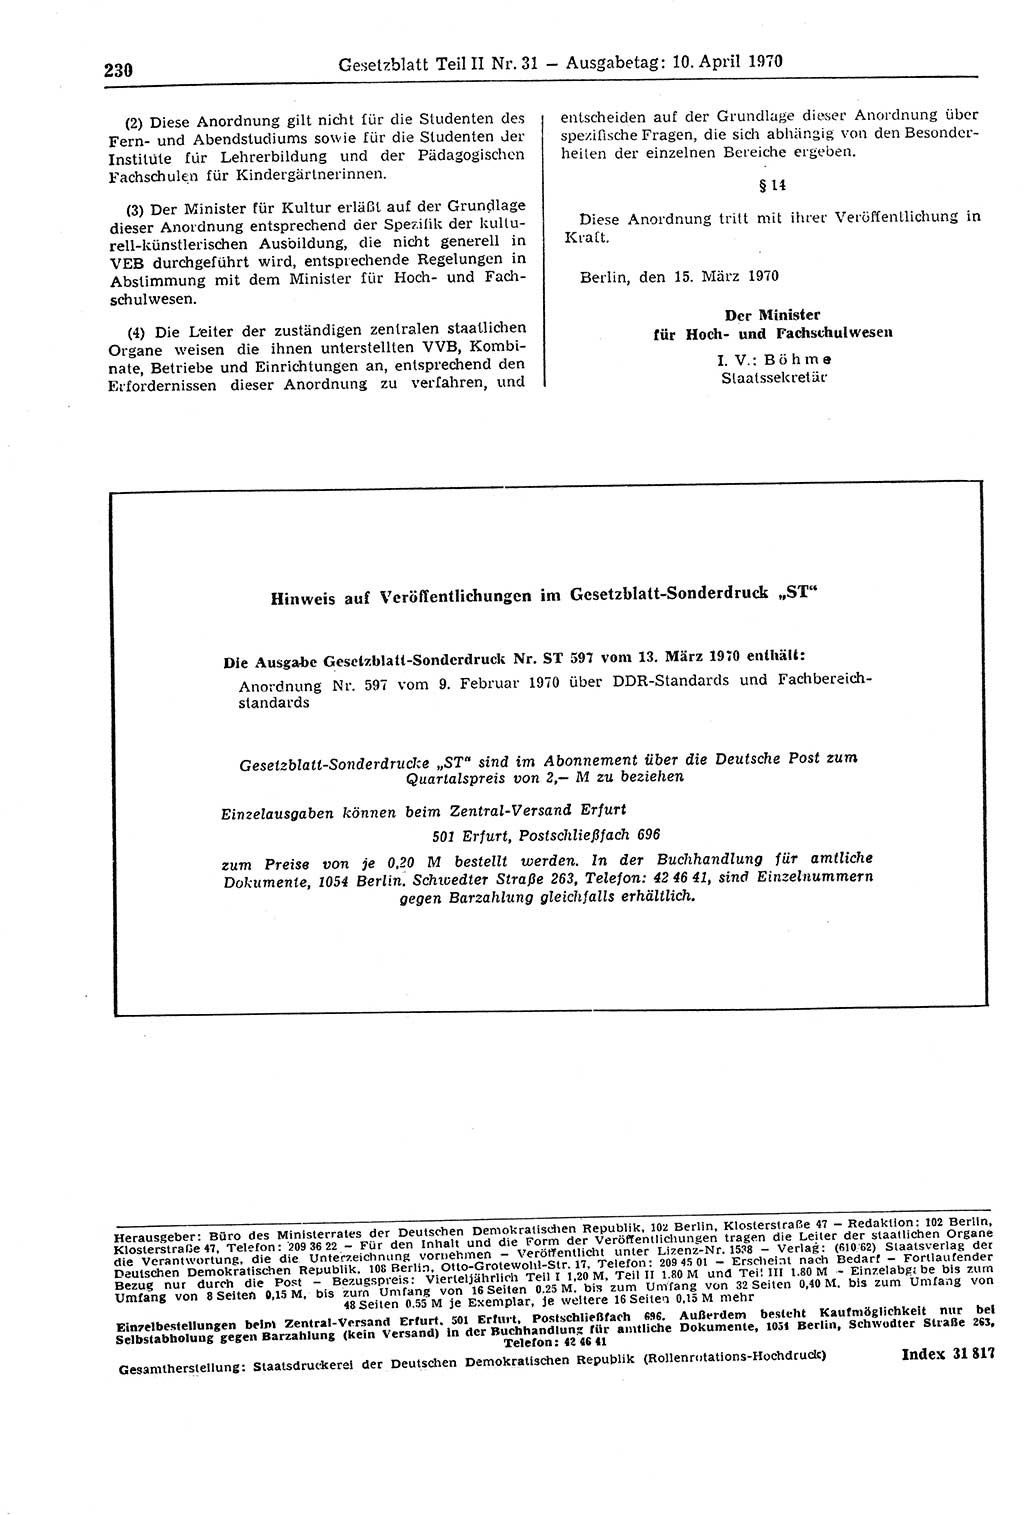 Gesetzblatt (GBl.) der Deutschen Demokratischen Republik (DDR) Teil ⅠⅠ 1970, Seite 230 (GBl. DDR ⅠⅠ 1970, S. 230)